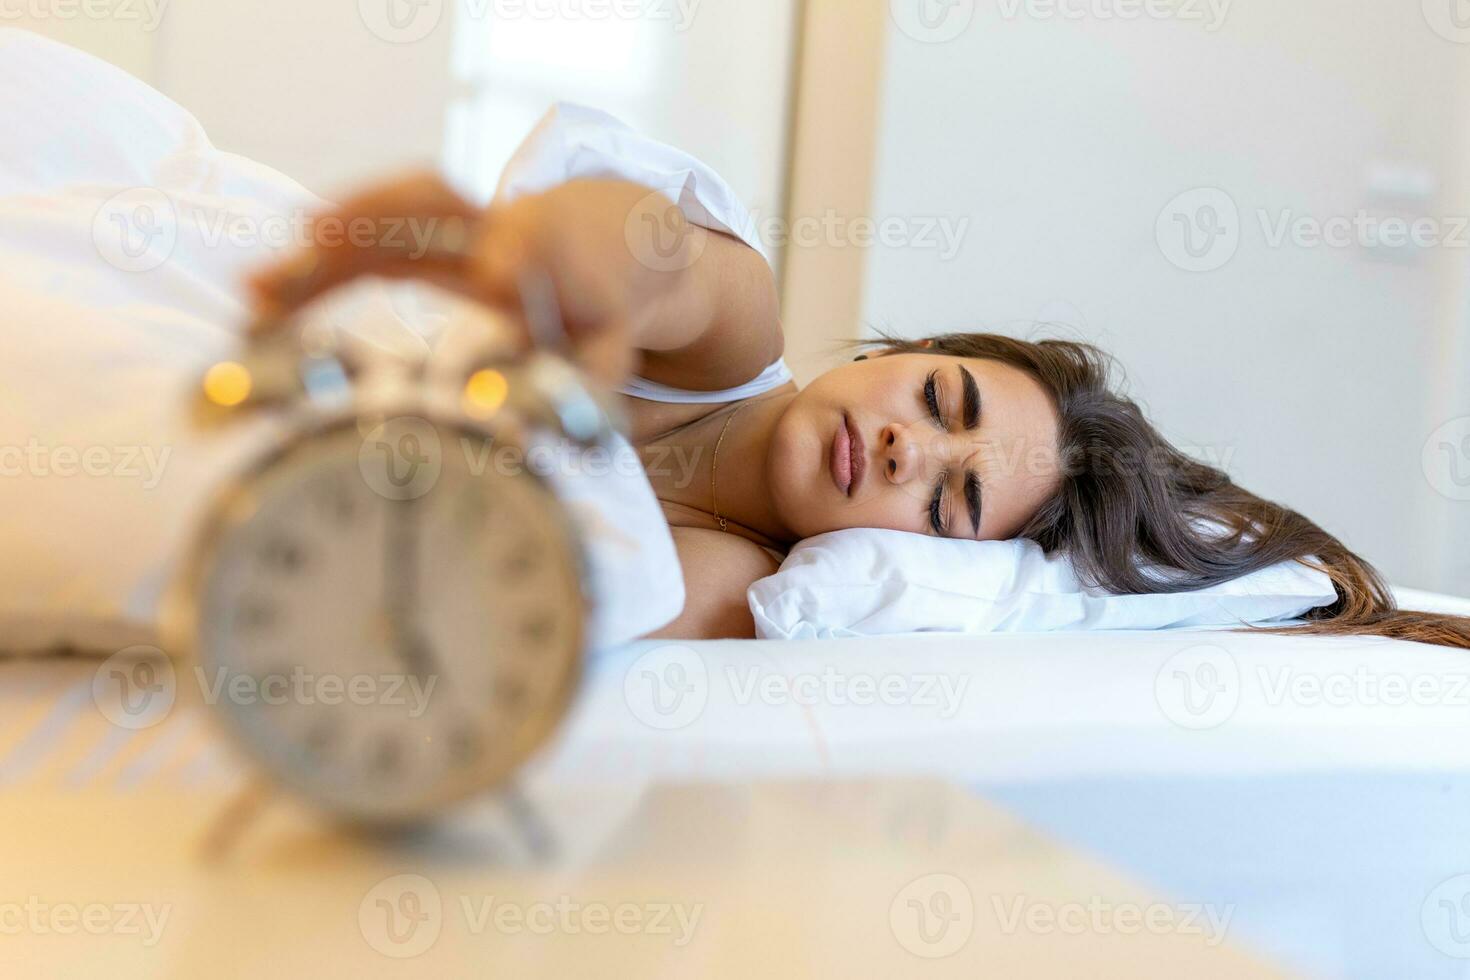 vrouw aan het liegen in bed draaien uit een alarm klok in de ochtend- Bij 5 uur. hand- bochten uit de alarm klok ontwaken omhoog Bij ochtend, meisje bochten uit de alarm klok ontwaken omhoog in de ochtend- van een telefoongesprek. foto